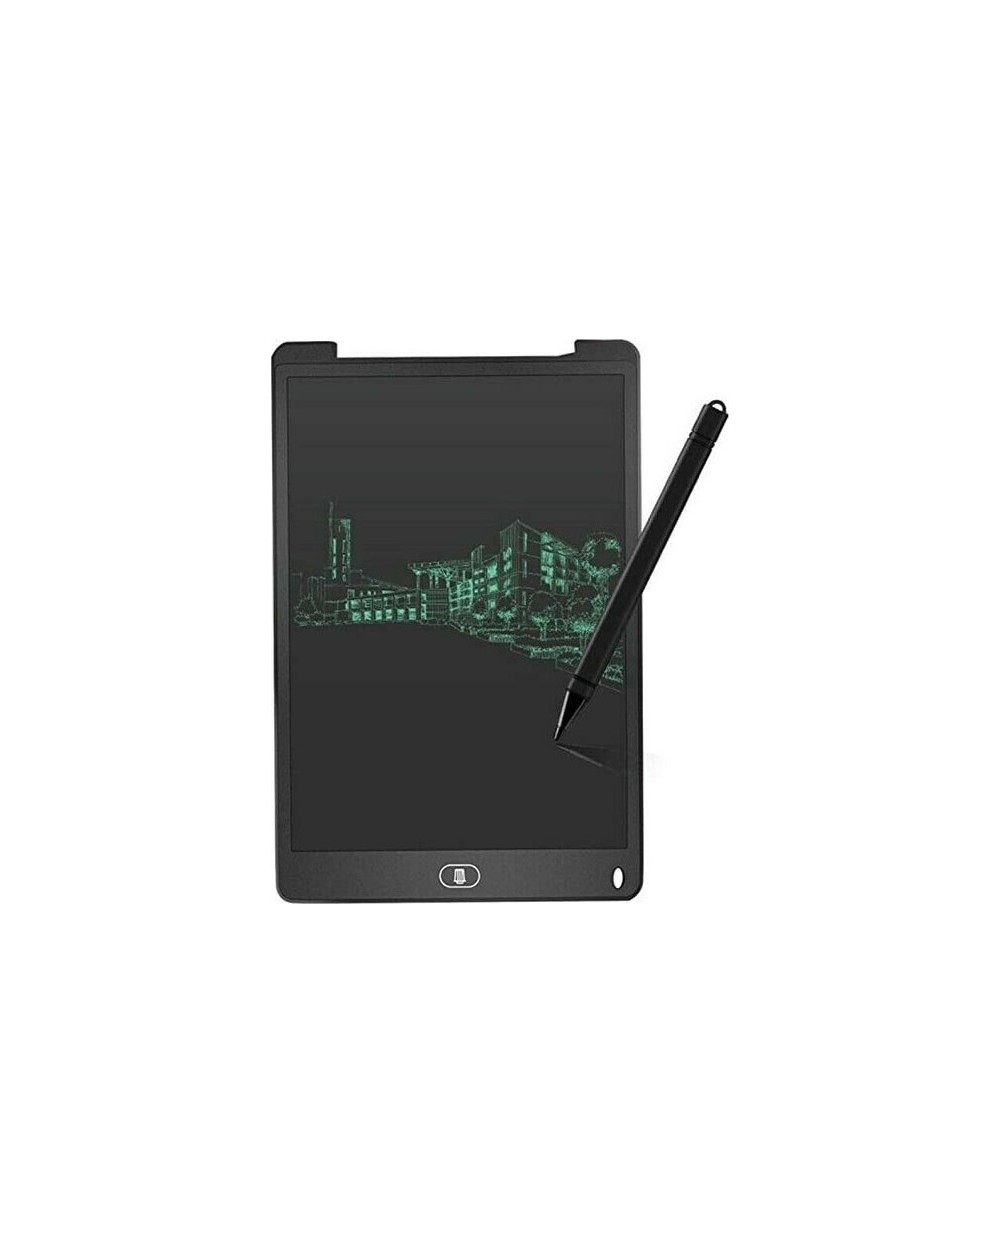 Ηλεκτρονικό Σημειωματάριο Writing Tablet 12" LCD EZRA WT02